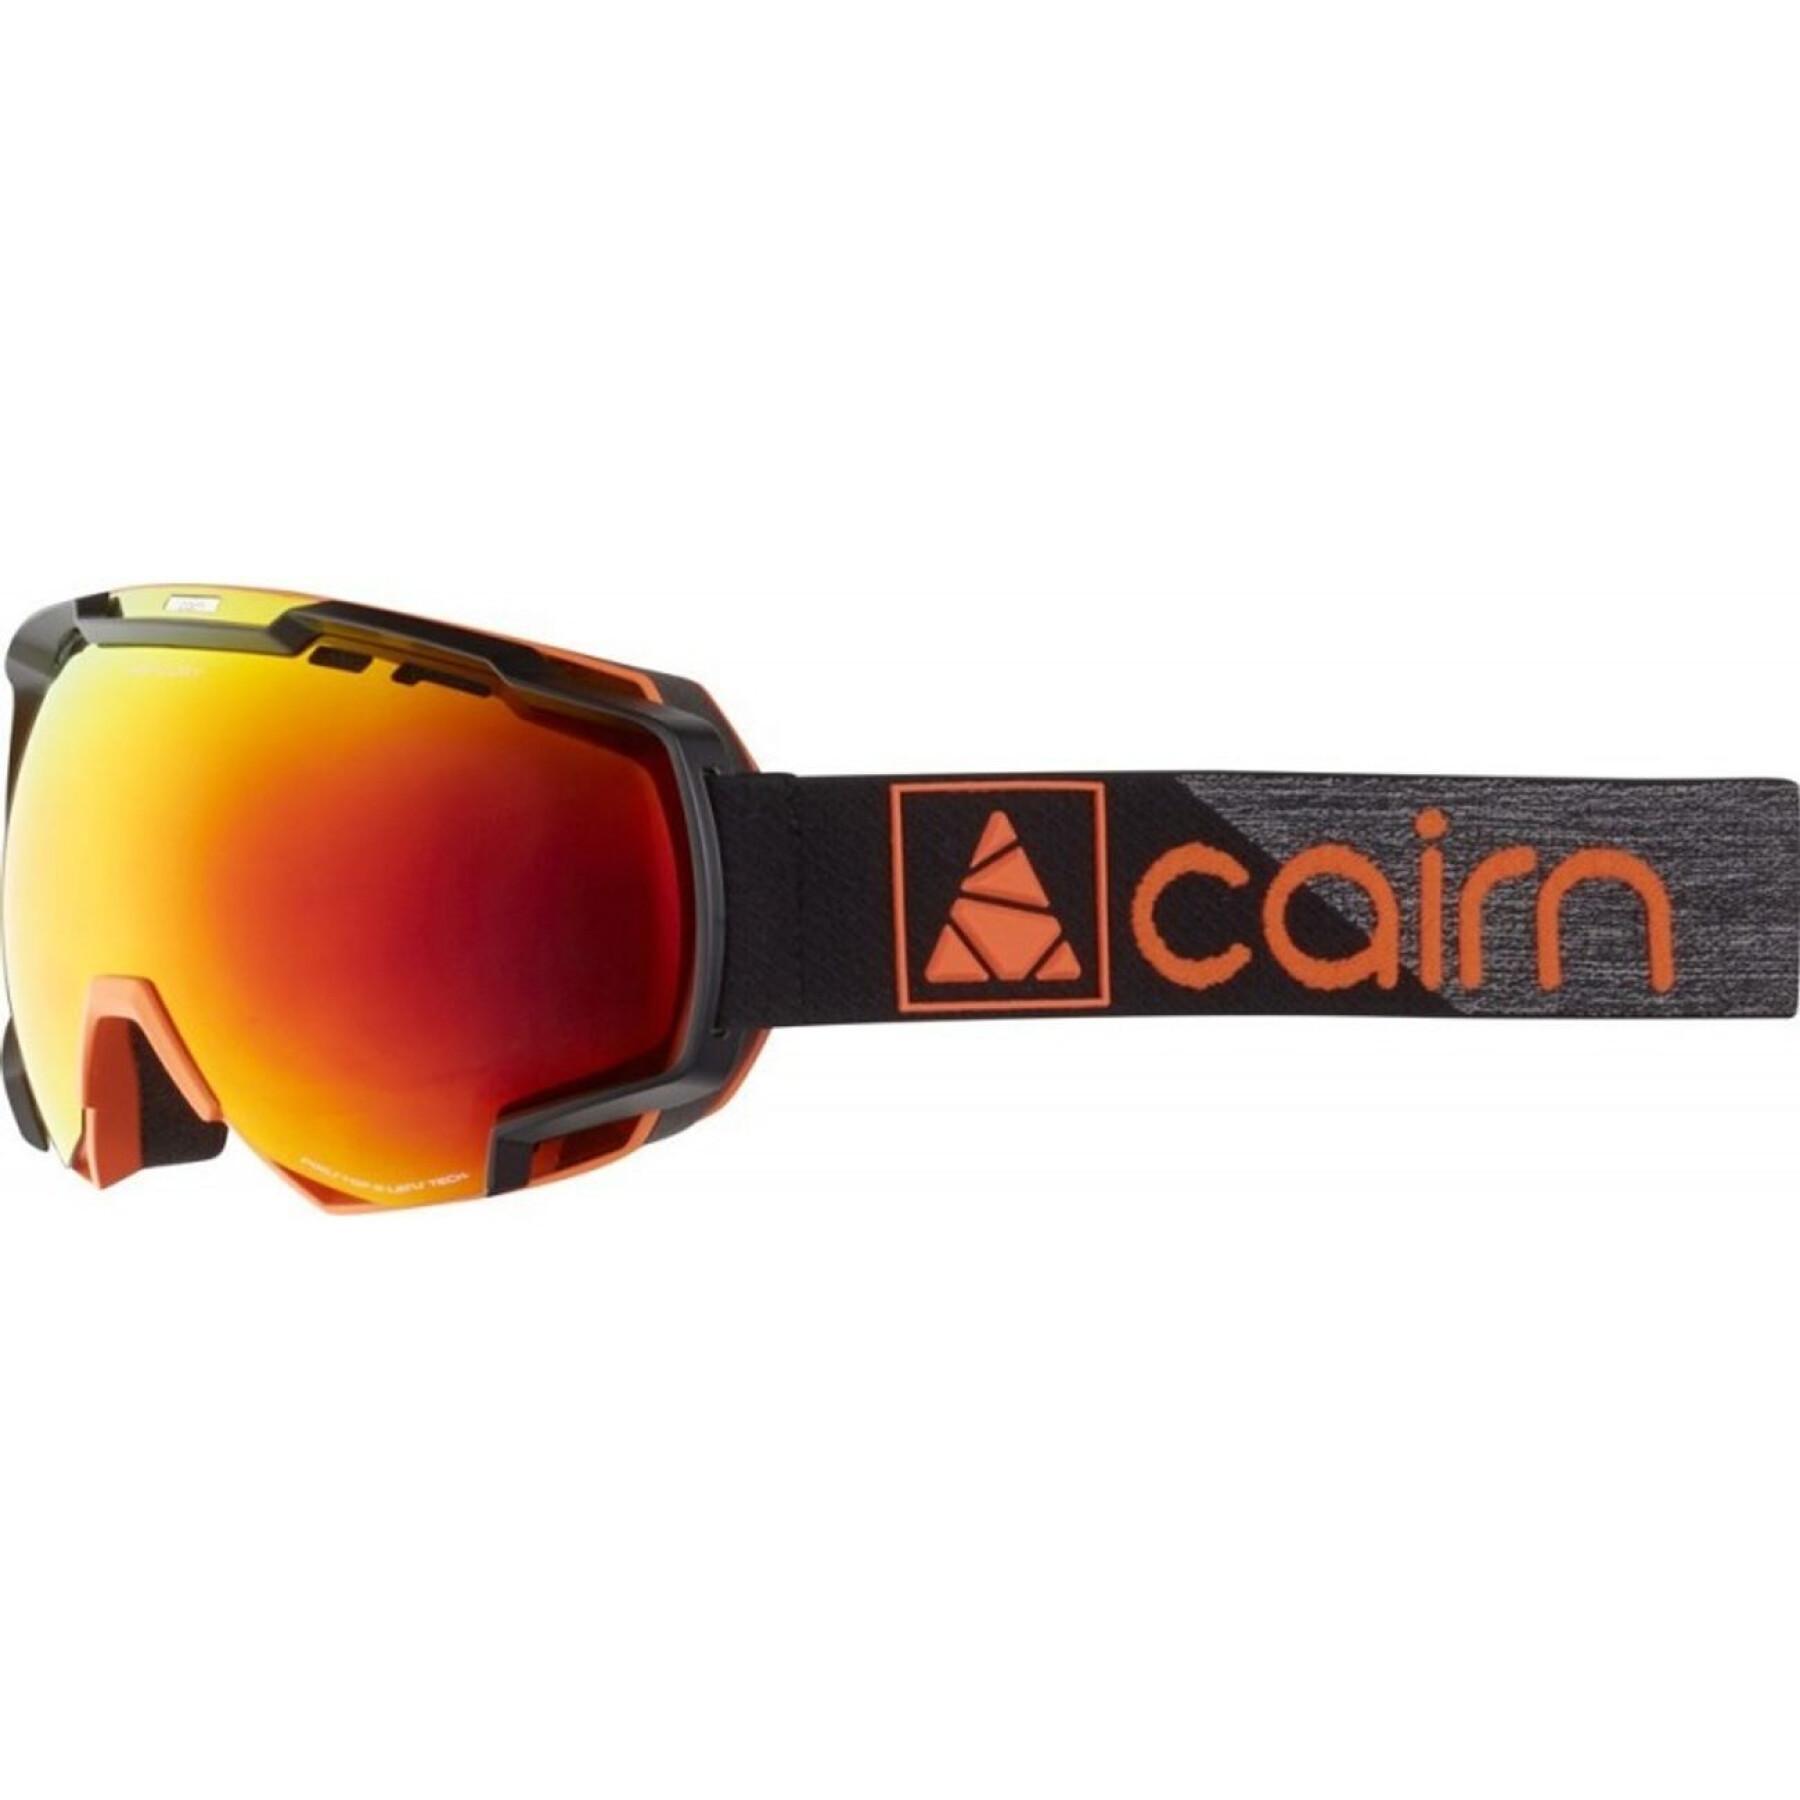 Masque de ski Cairn Mercury SPX3000[Ium]